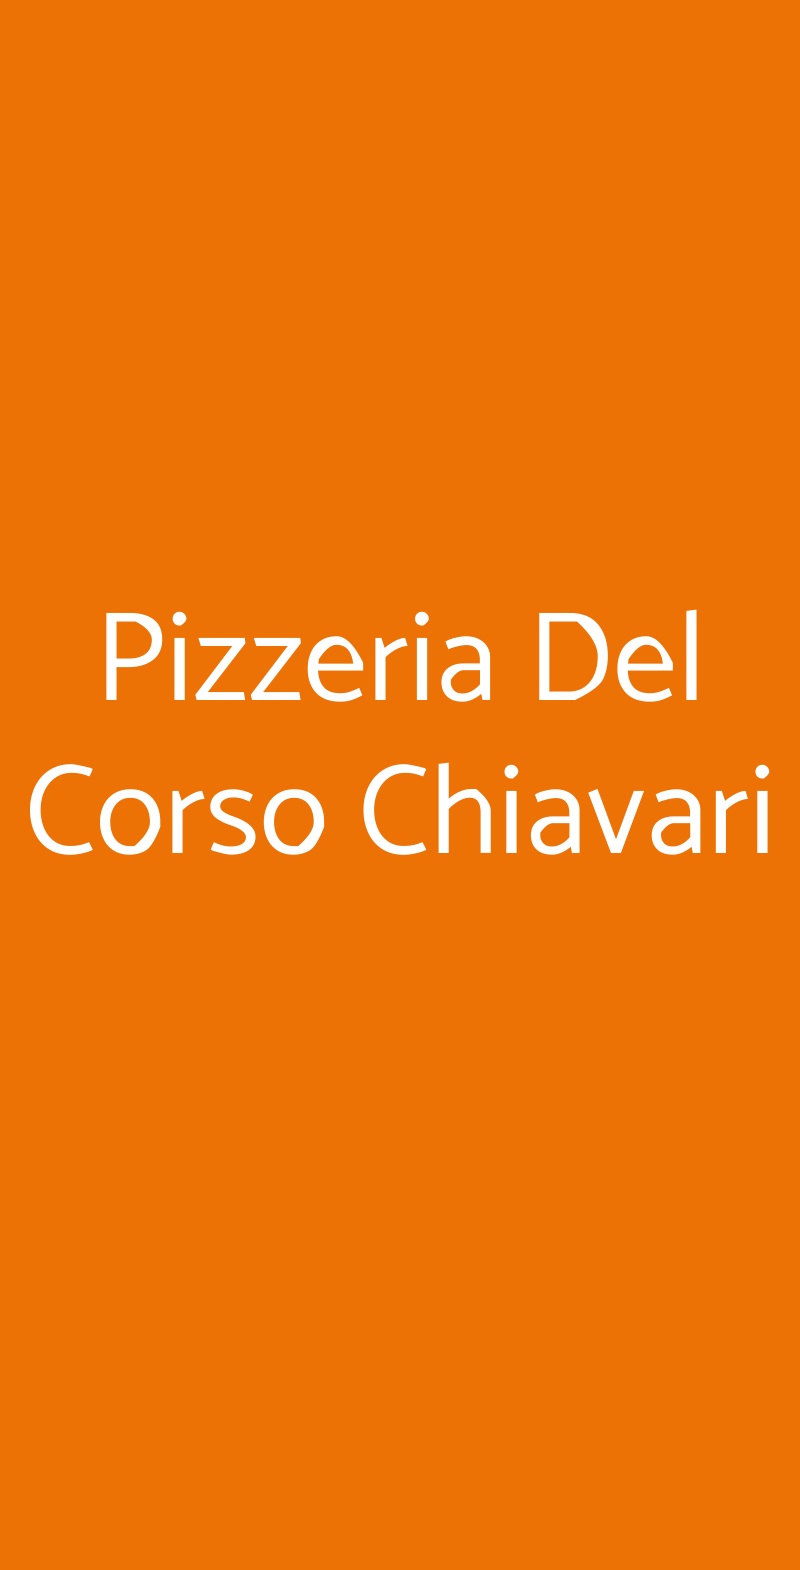 Pizzeria Del Corso  Chiavari menù 1 pagina